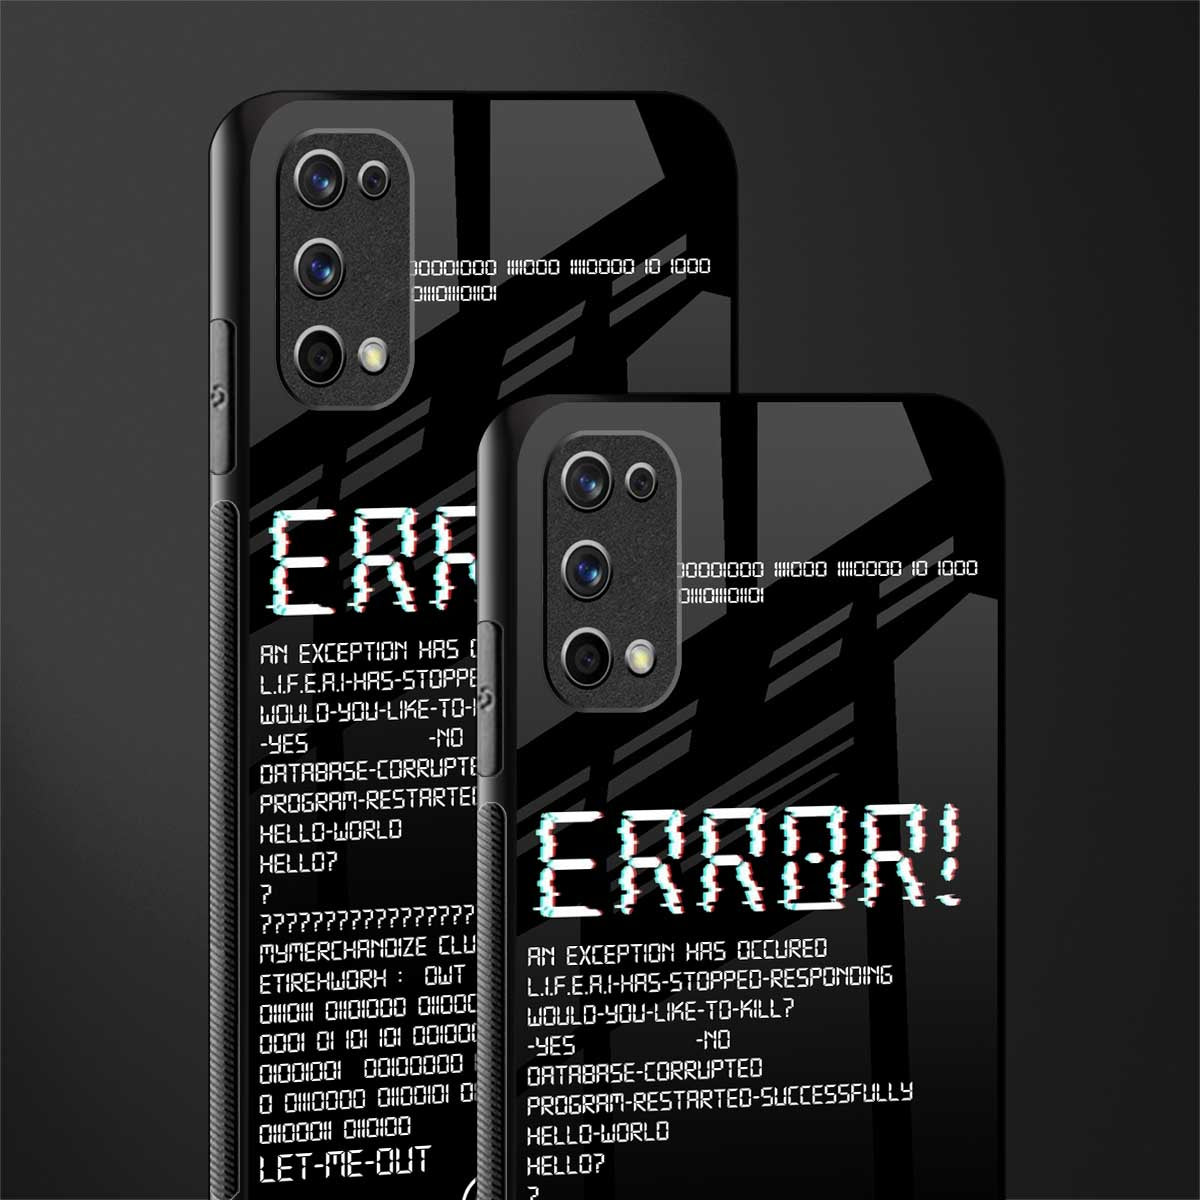 error glass case for realme 7 pro image-2